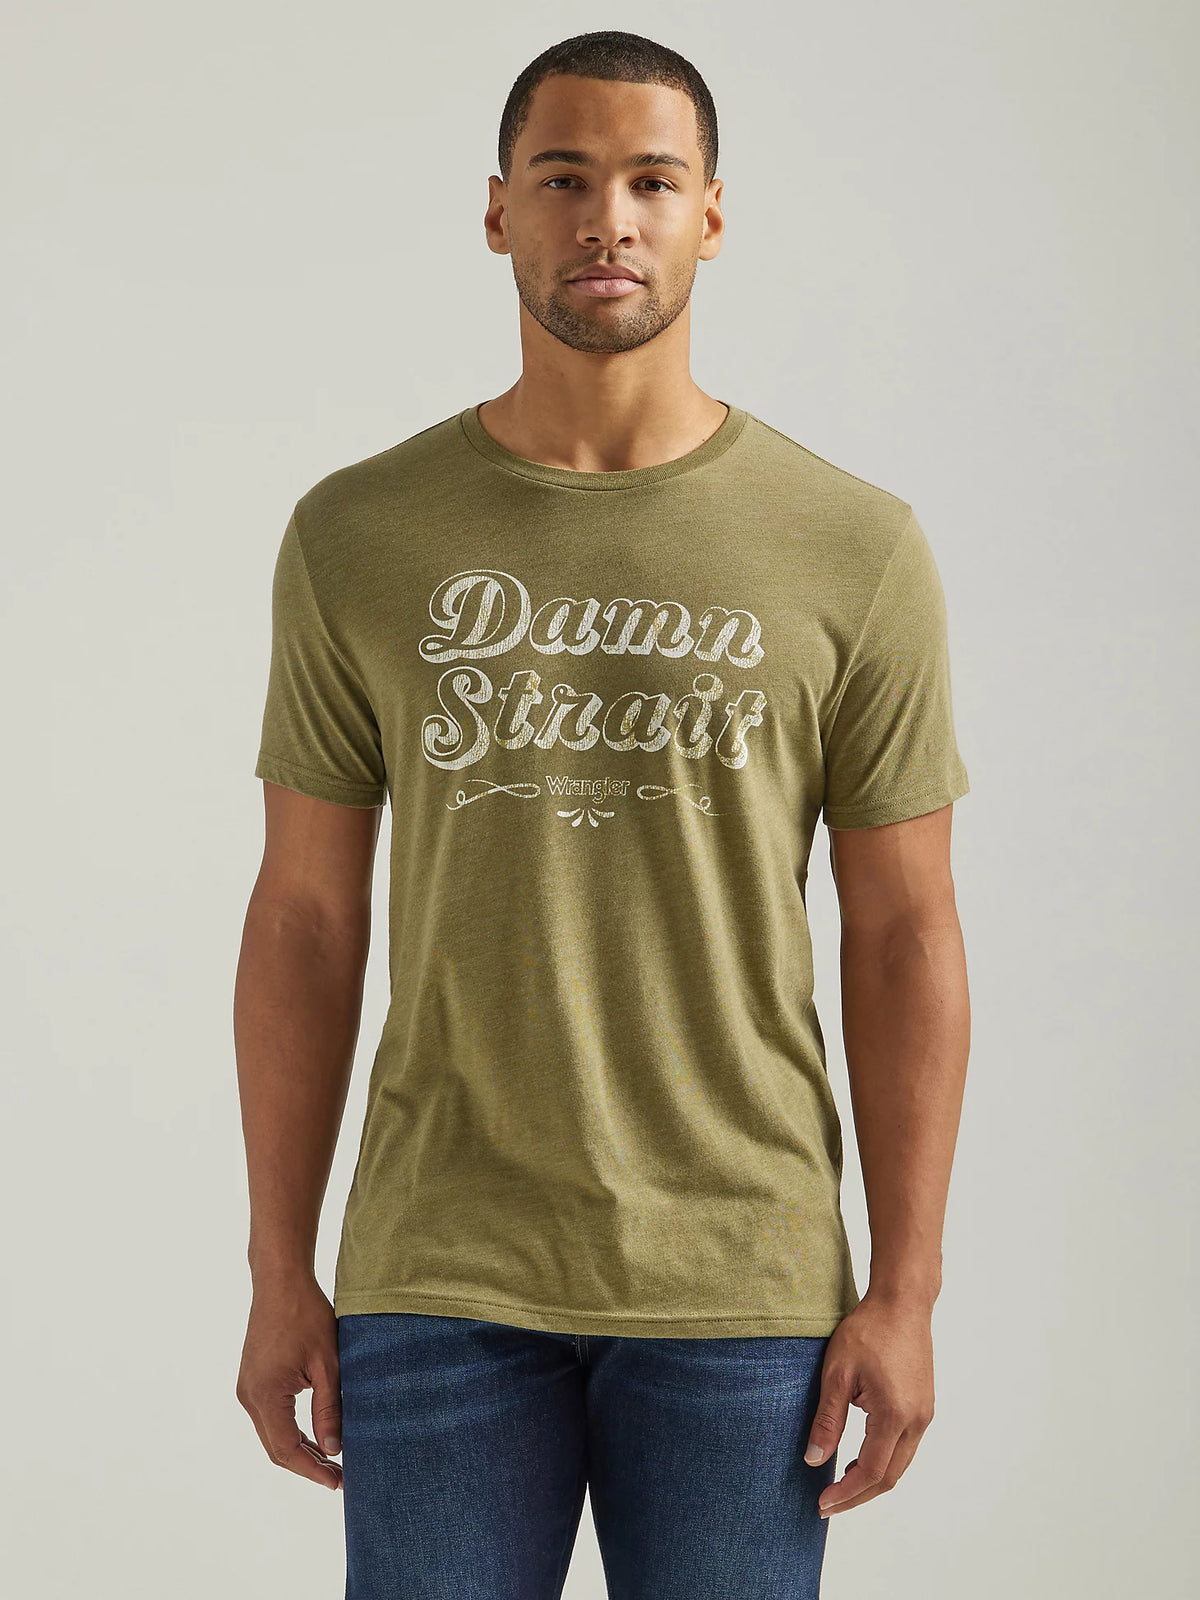 Wrangler Men's George Strait Damn Strait T-Shirt